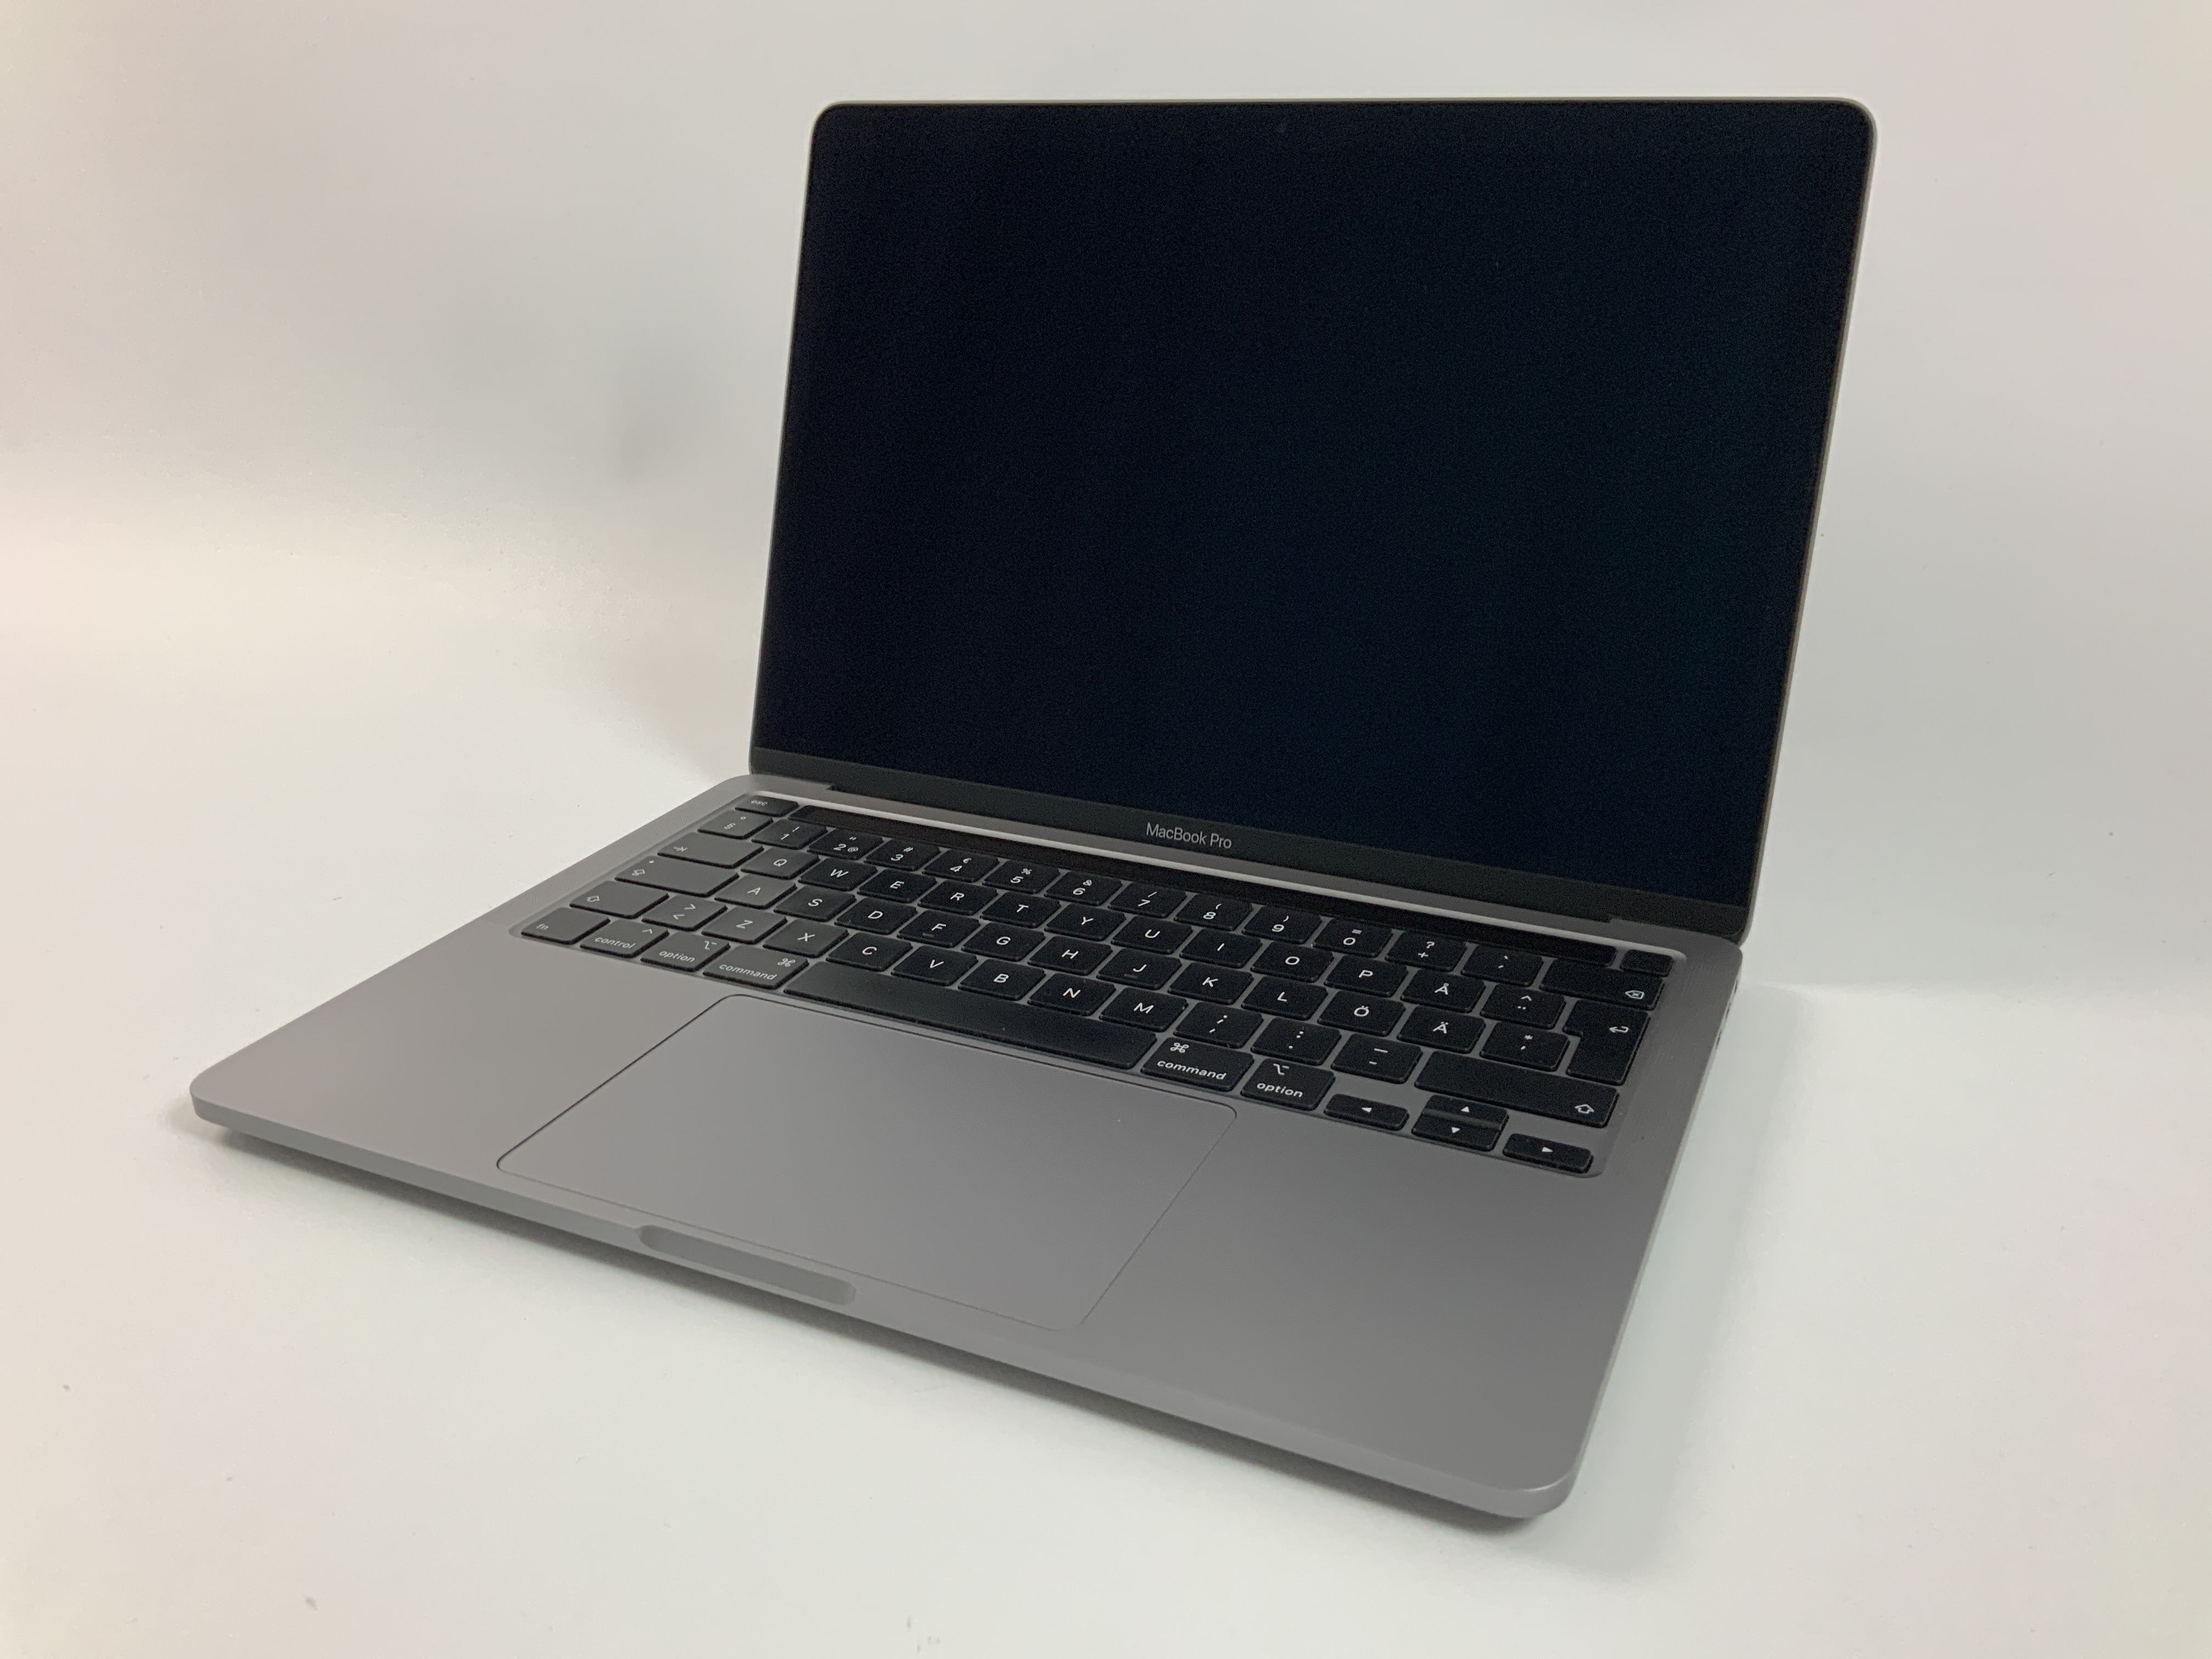 MacBook Pro 13" 4TBT Mid 2020 (Intel Quad-Core i5 2.0 GHz 16 GB RAM 512 GB SSD), Space Gray, Intel Quad-Core i5 2.0 GHz, 16 GB RAM, 512 GB SSD, bild 1